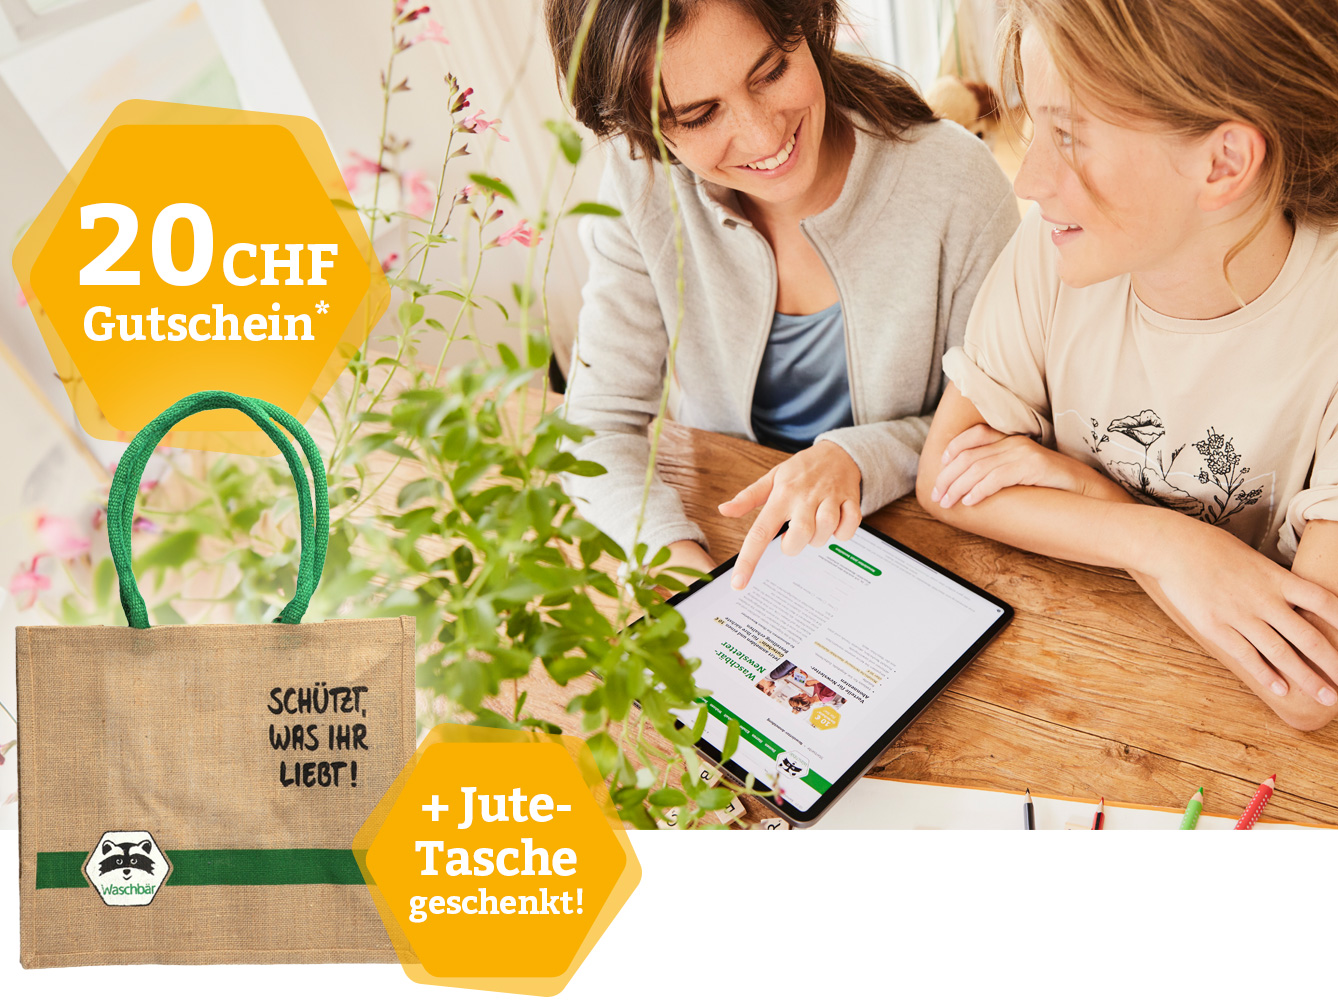 Jetzt anmelden und CHF 20 Gutschein + gratis Jutetasche erhalten!